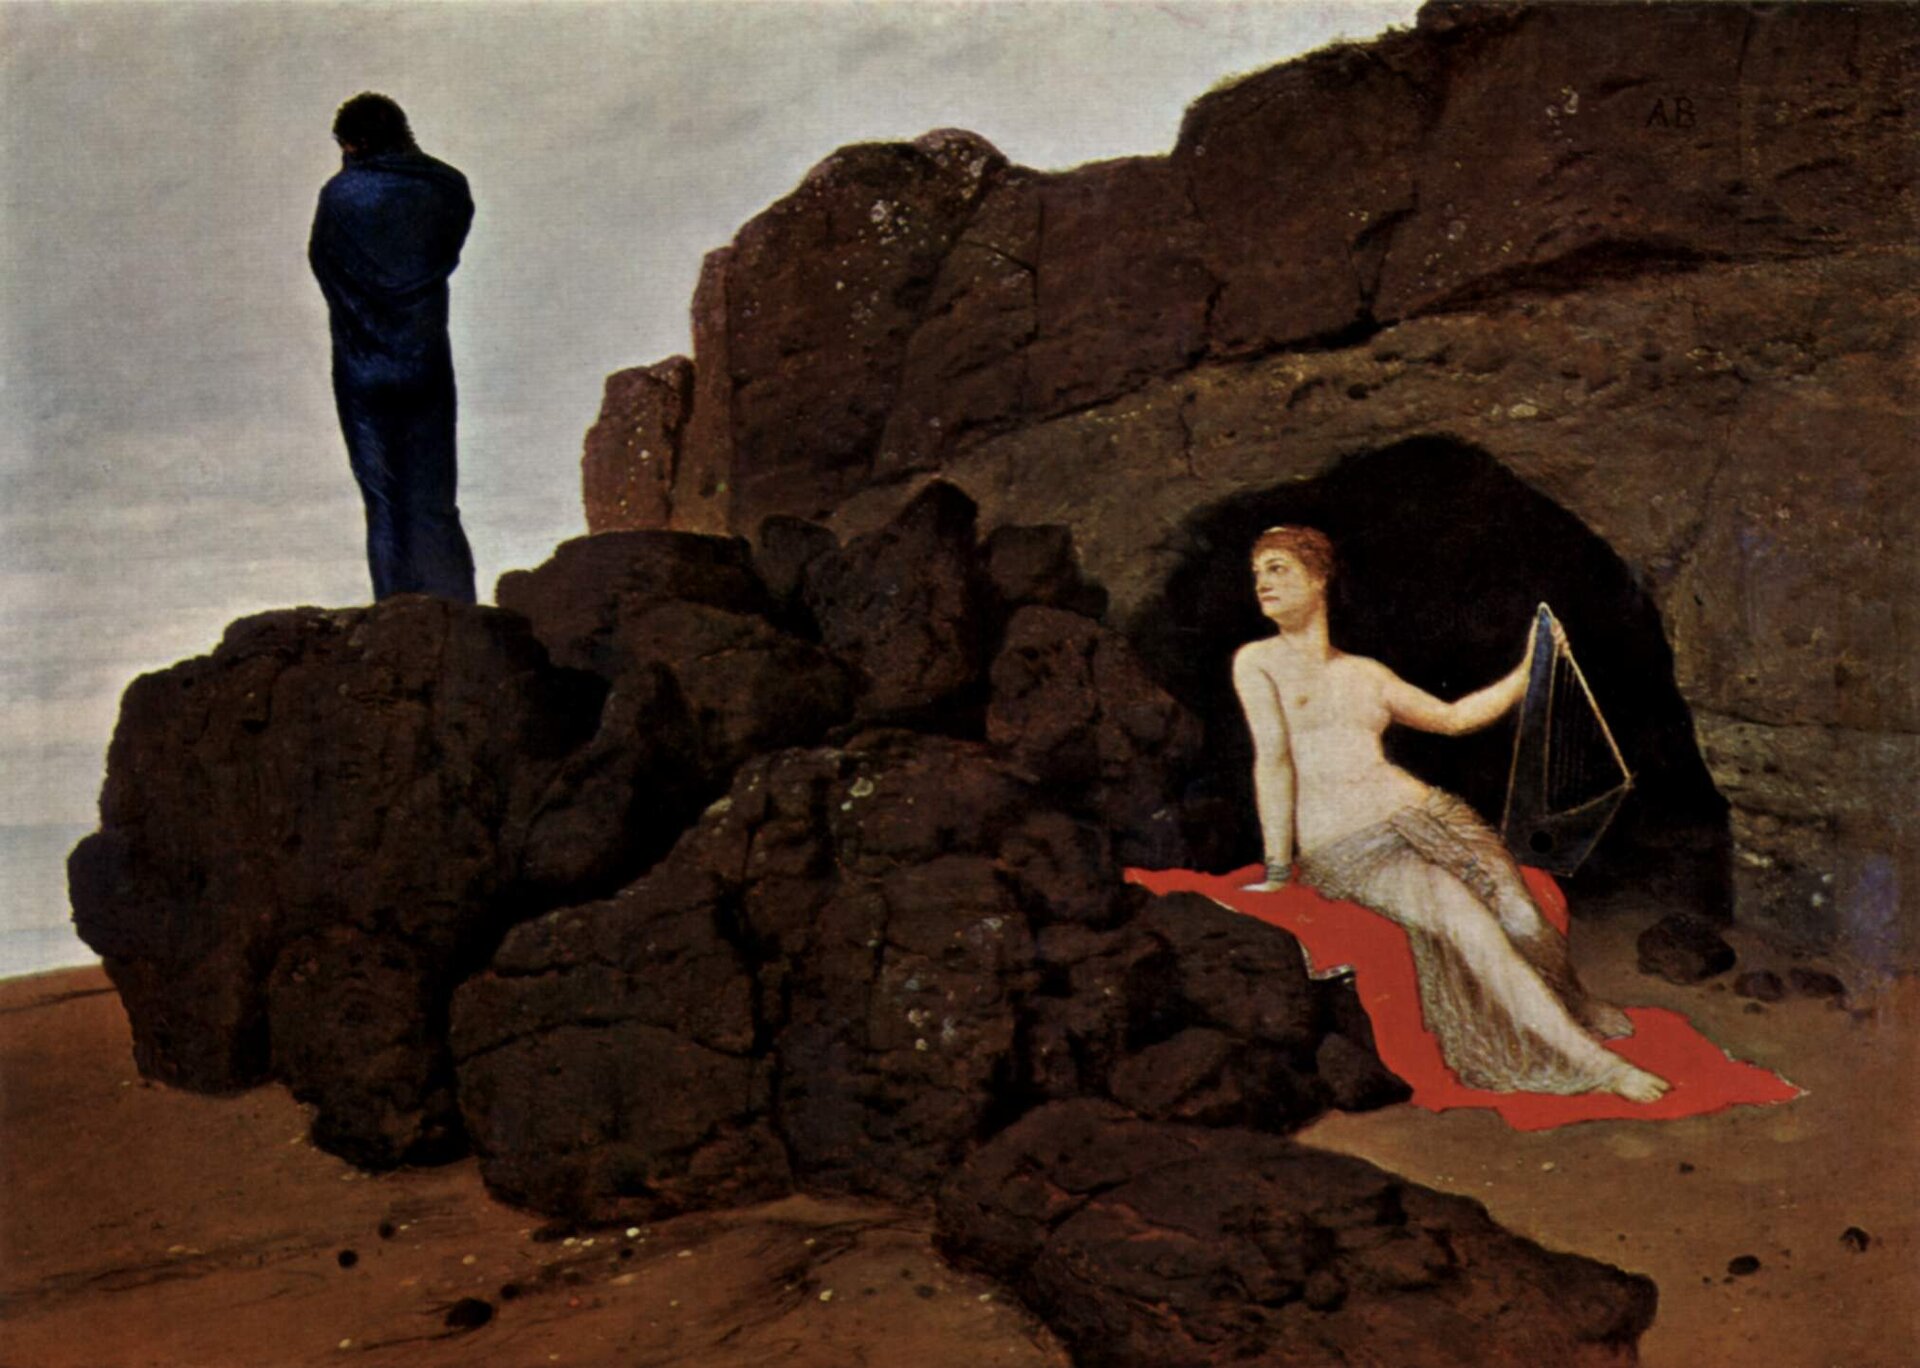 Odyseusz i Kalipso Źródło: Arnold Böcklin, Odyseusz i Kalipso, 1883, olej na desce, domena publiczna.